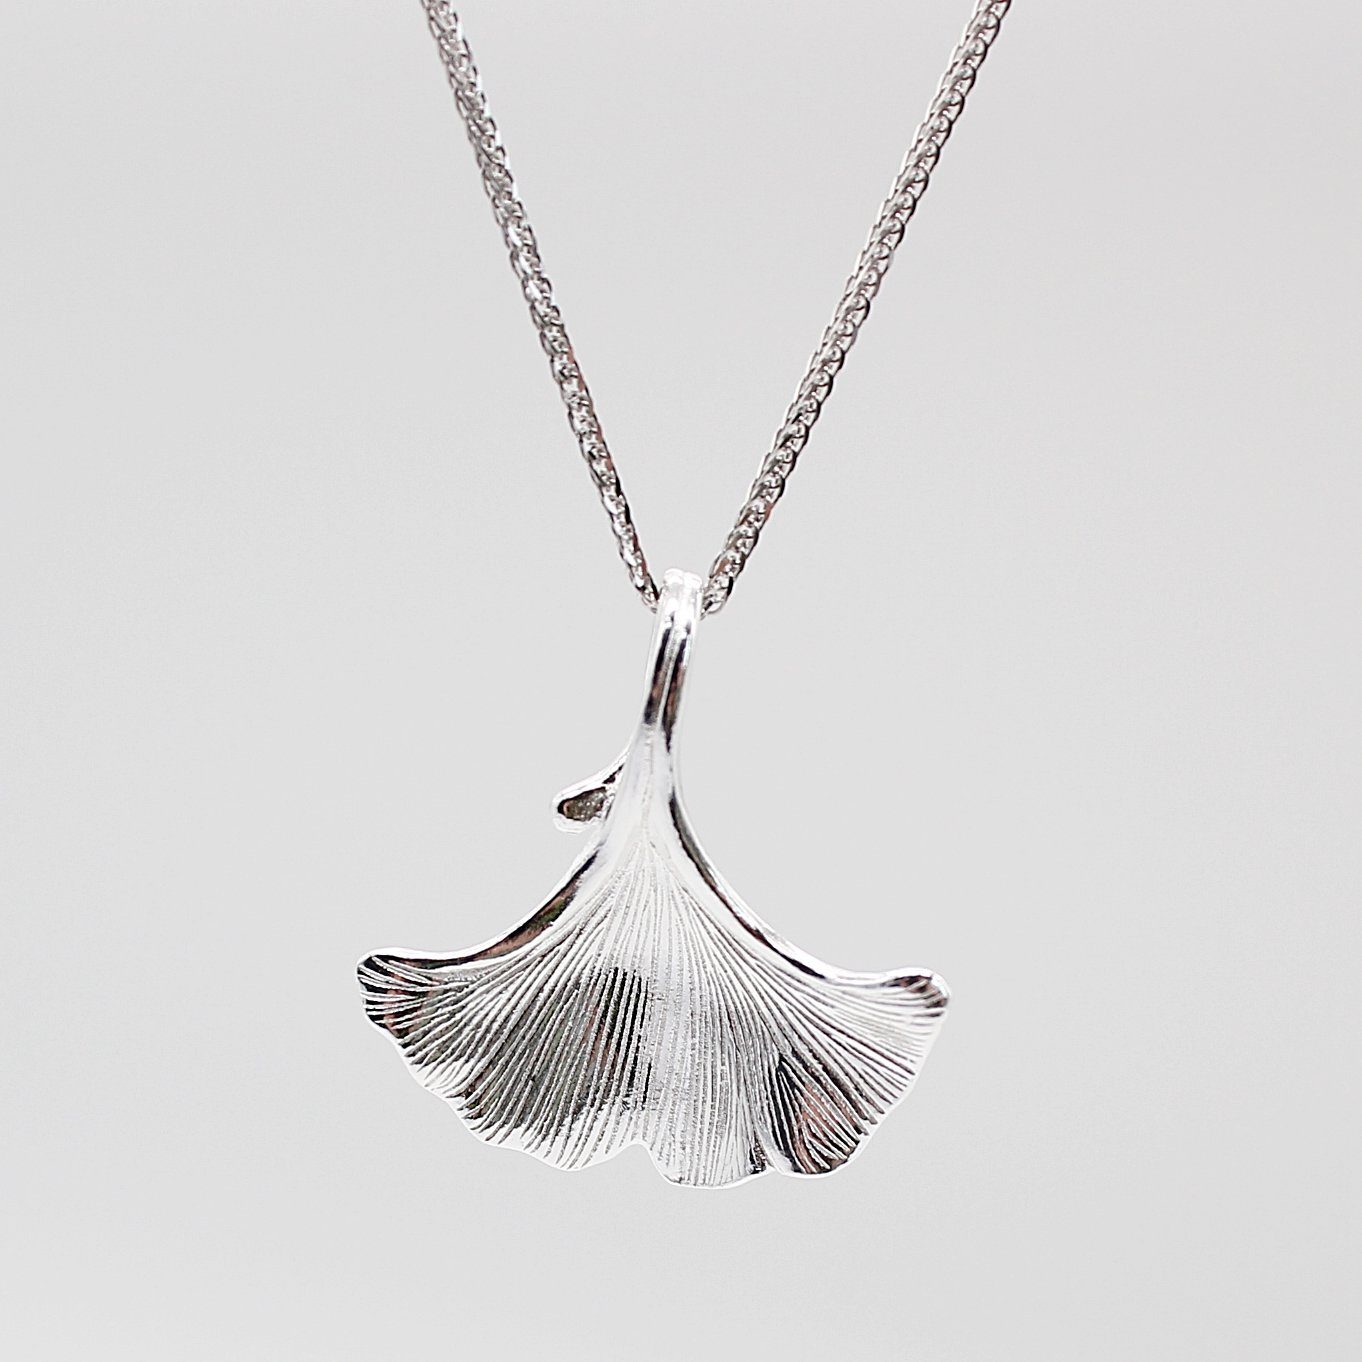 ELLAWIL Silberkette Kette mit Ginkgoblatt Anhänger Damen Zirkonia Halskette Mädchen (Kettenlänge 45 cm, Sterling Silber 925), inklusive Geschenkschachtel